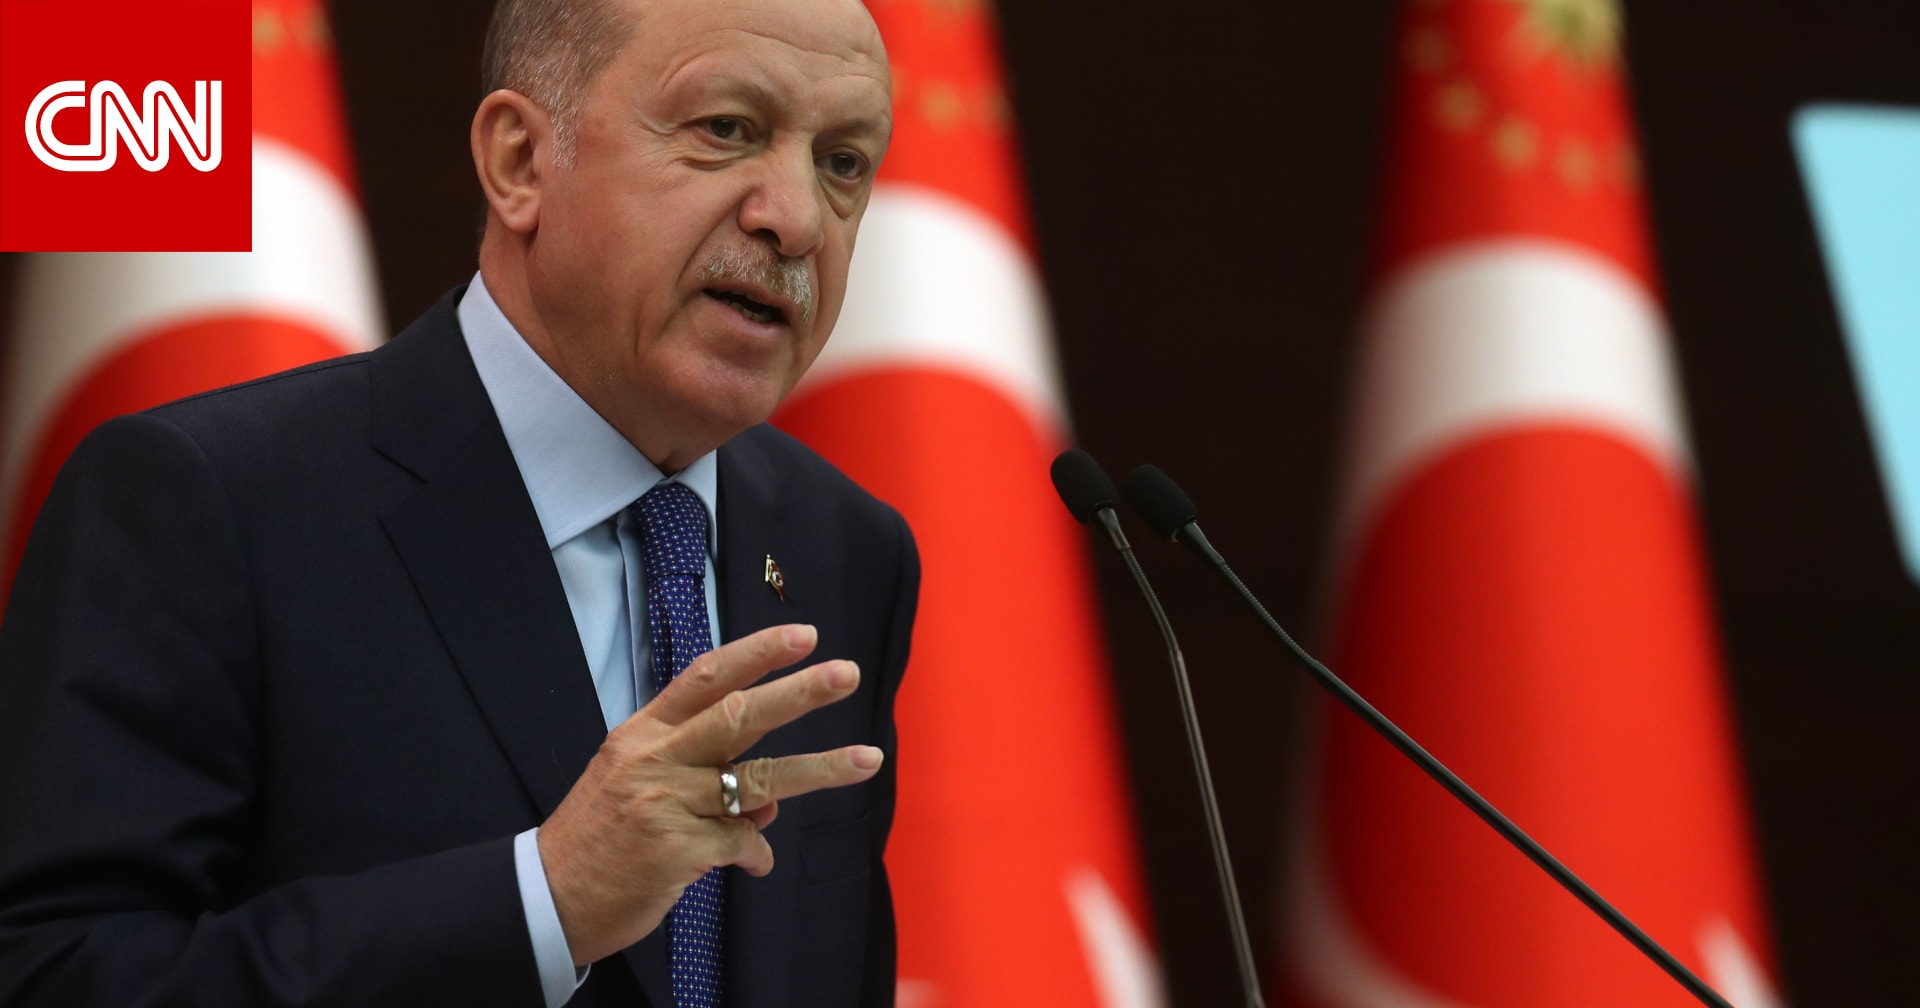 أردوغان وتصريح  لن نسمح في تركيا لأحد أن يجوع أو يُظلم أو يتعرض لمعاملة سيئة  يثير تفاعلا - CNN Arabic